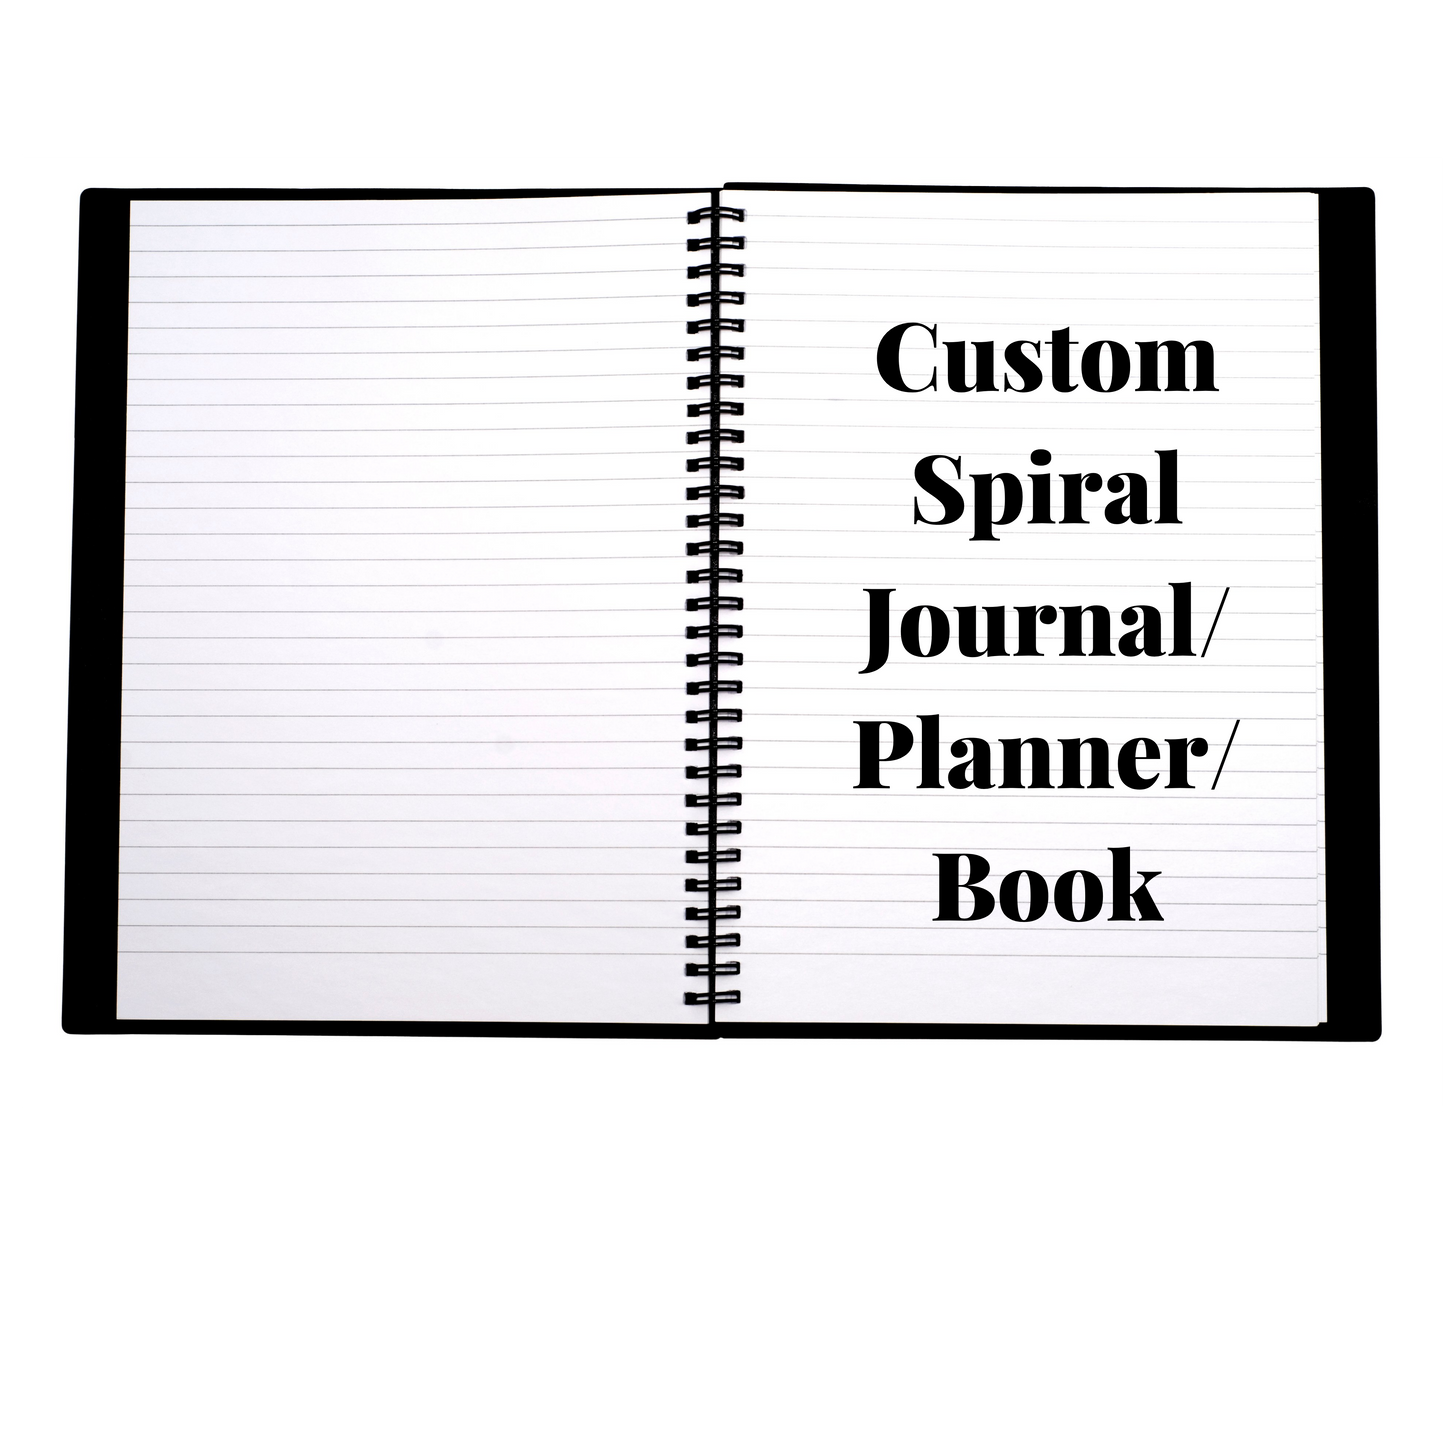 Custom Spiral Bound Journal/Planner/Book